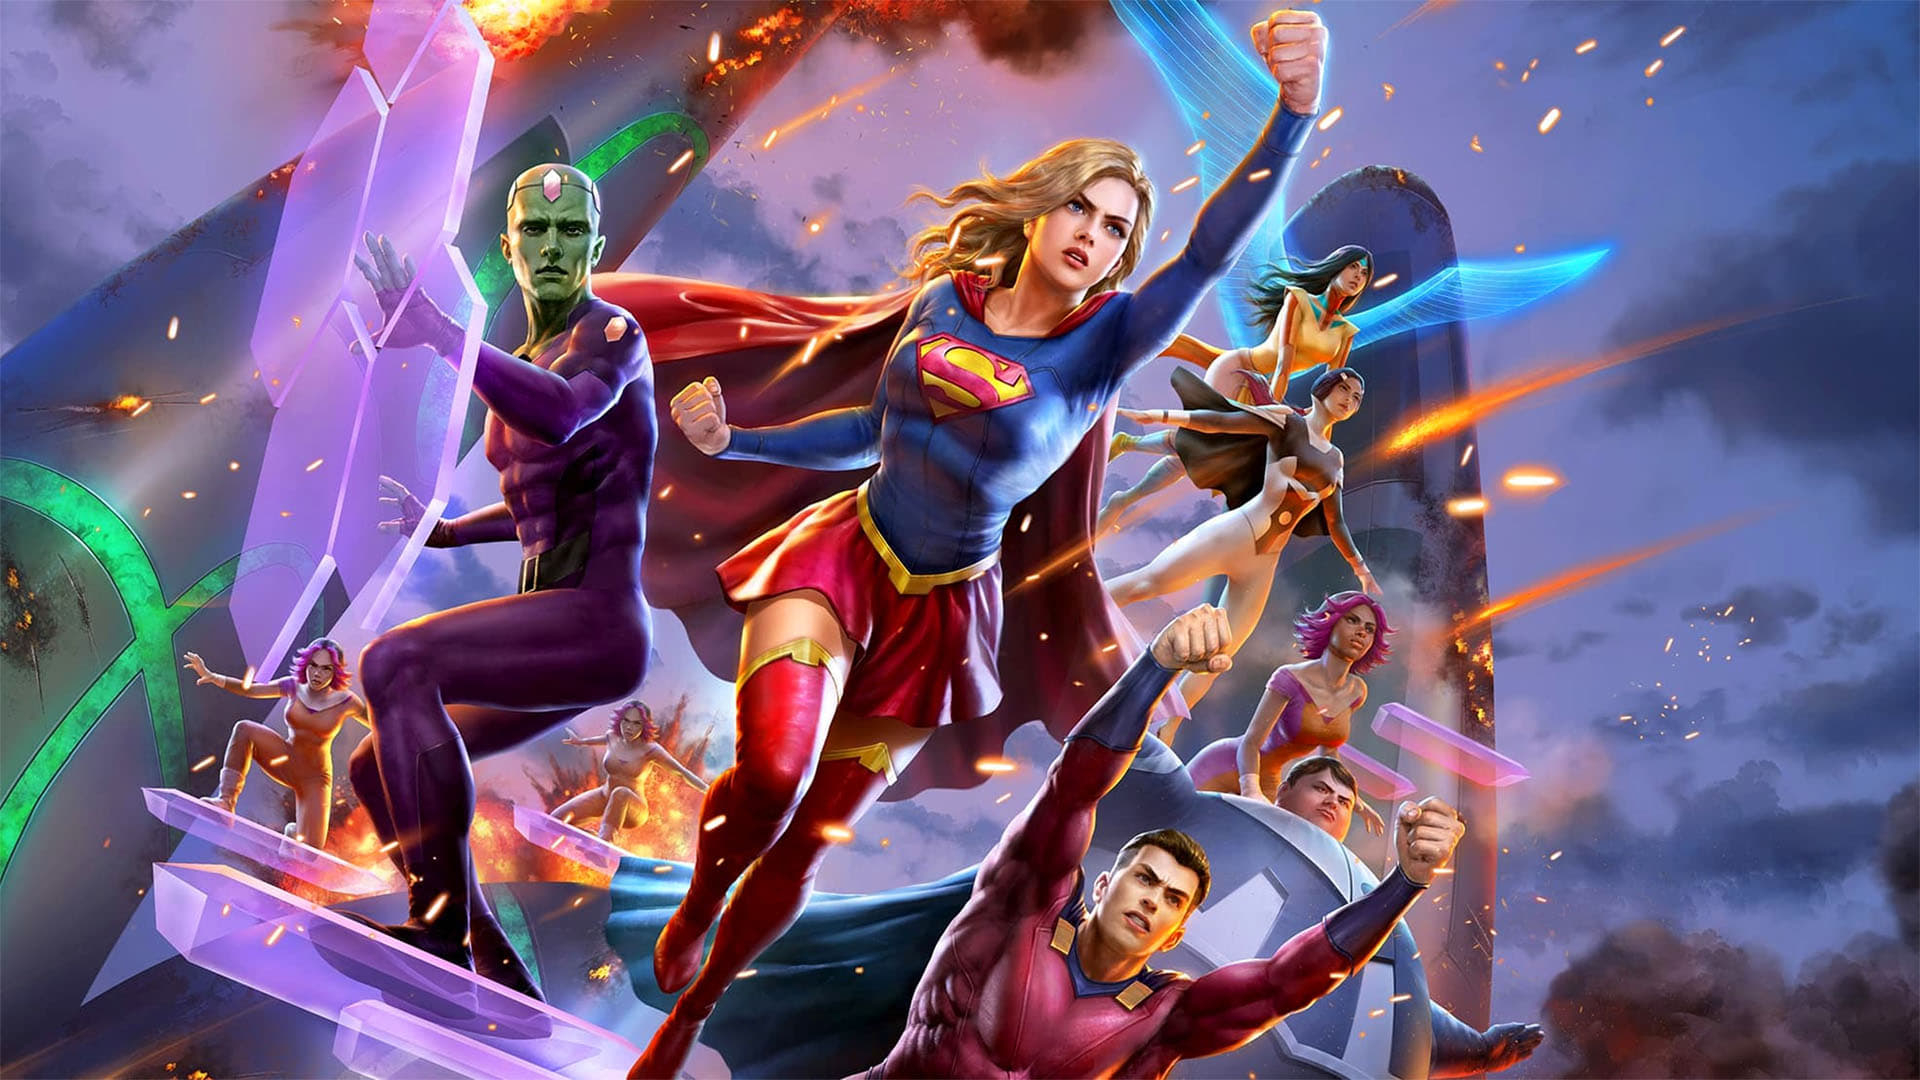 Quân đoàn siêu anh hùng - Legion of super-heroes